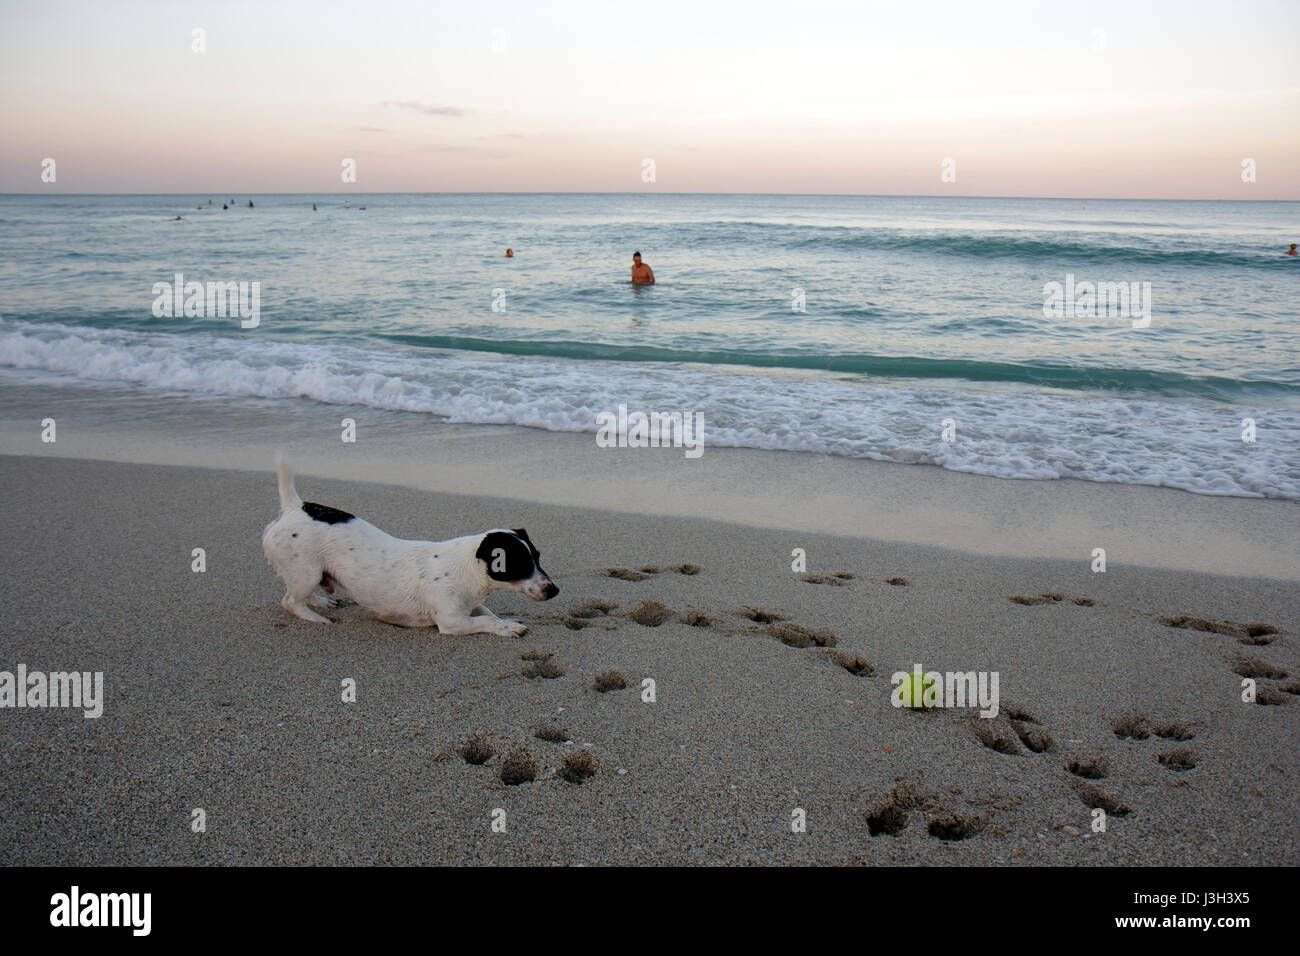 Miami Beach Florida,Océan Atlantique,eau,rivage,plage publique,sable,rivage,littoral,mer,chien,balle,animal,jouer,paw print,Jack Russell terrier,surf,FL080911025 Banque D'Images